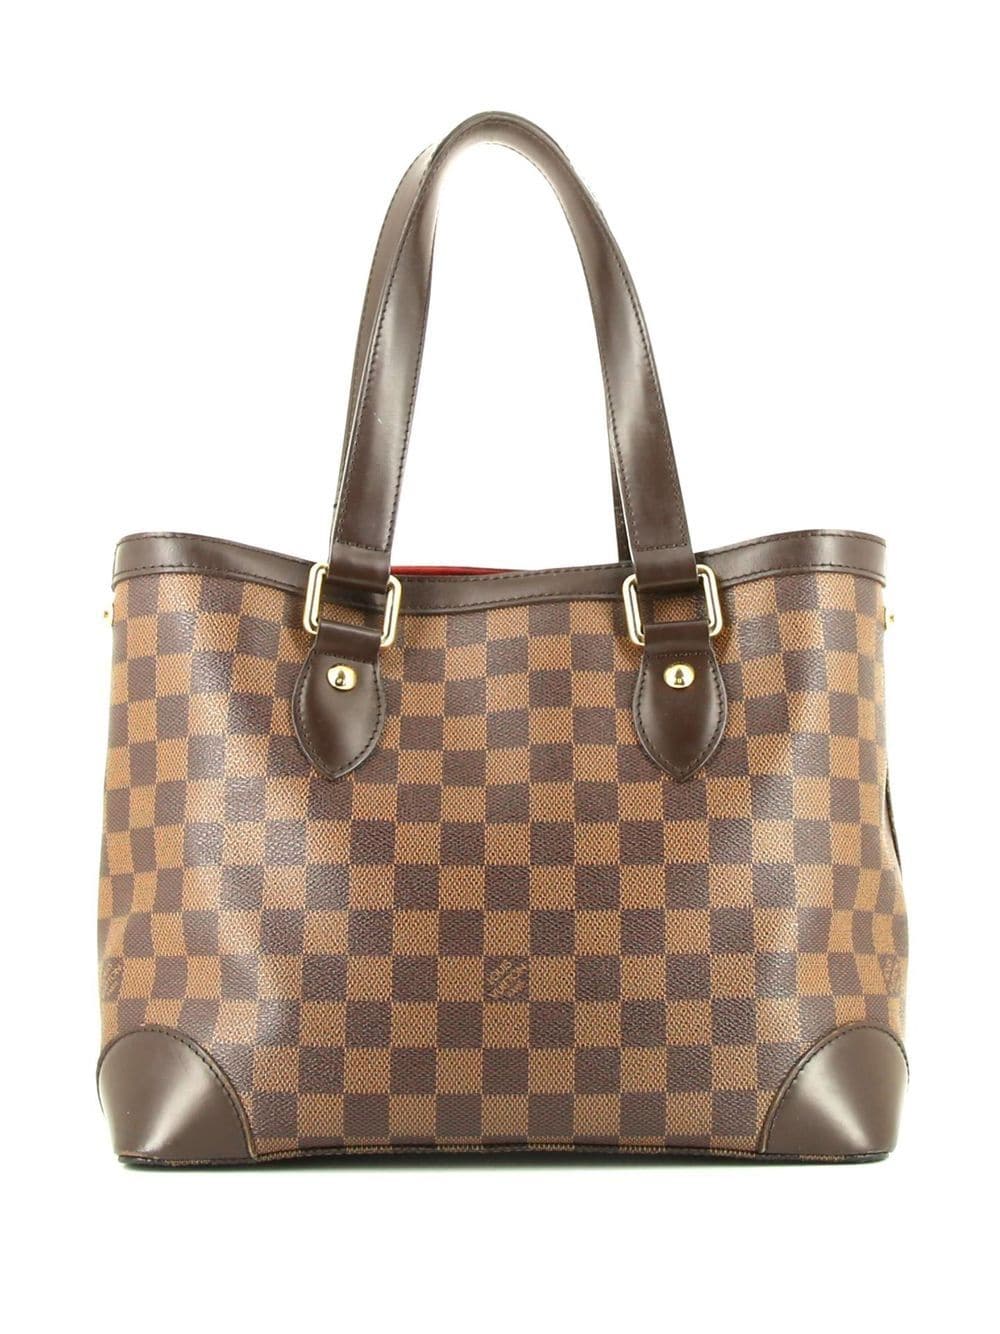 Authentic Louis Vuitton Damier Ebene Canvas & Leather Hampstead MM Tote Bag